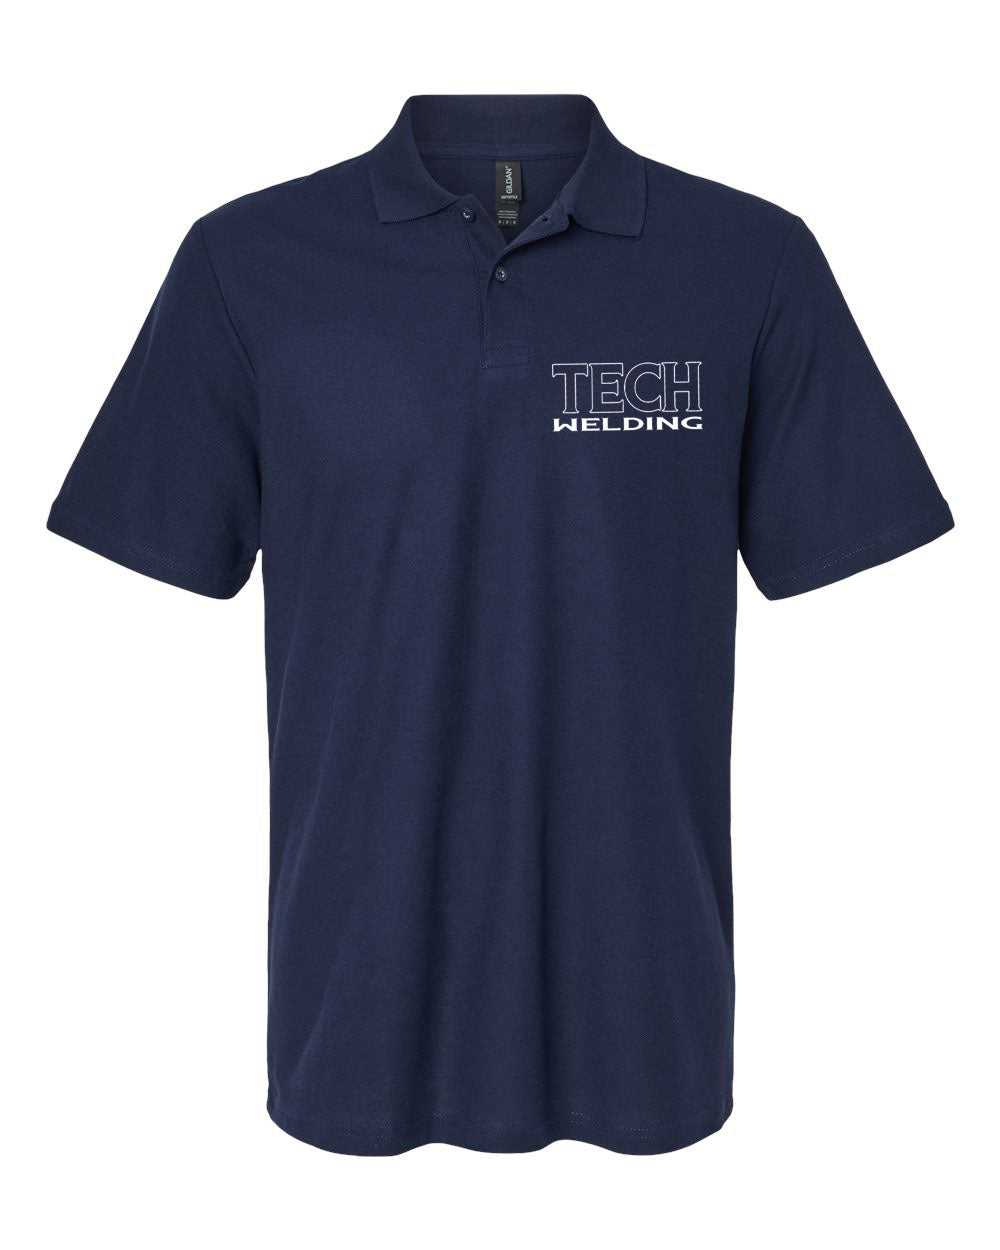 Sussex Tech Welding design 3 Polo T-Shirt